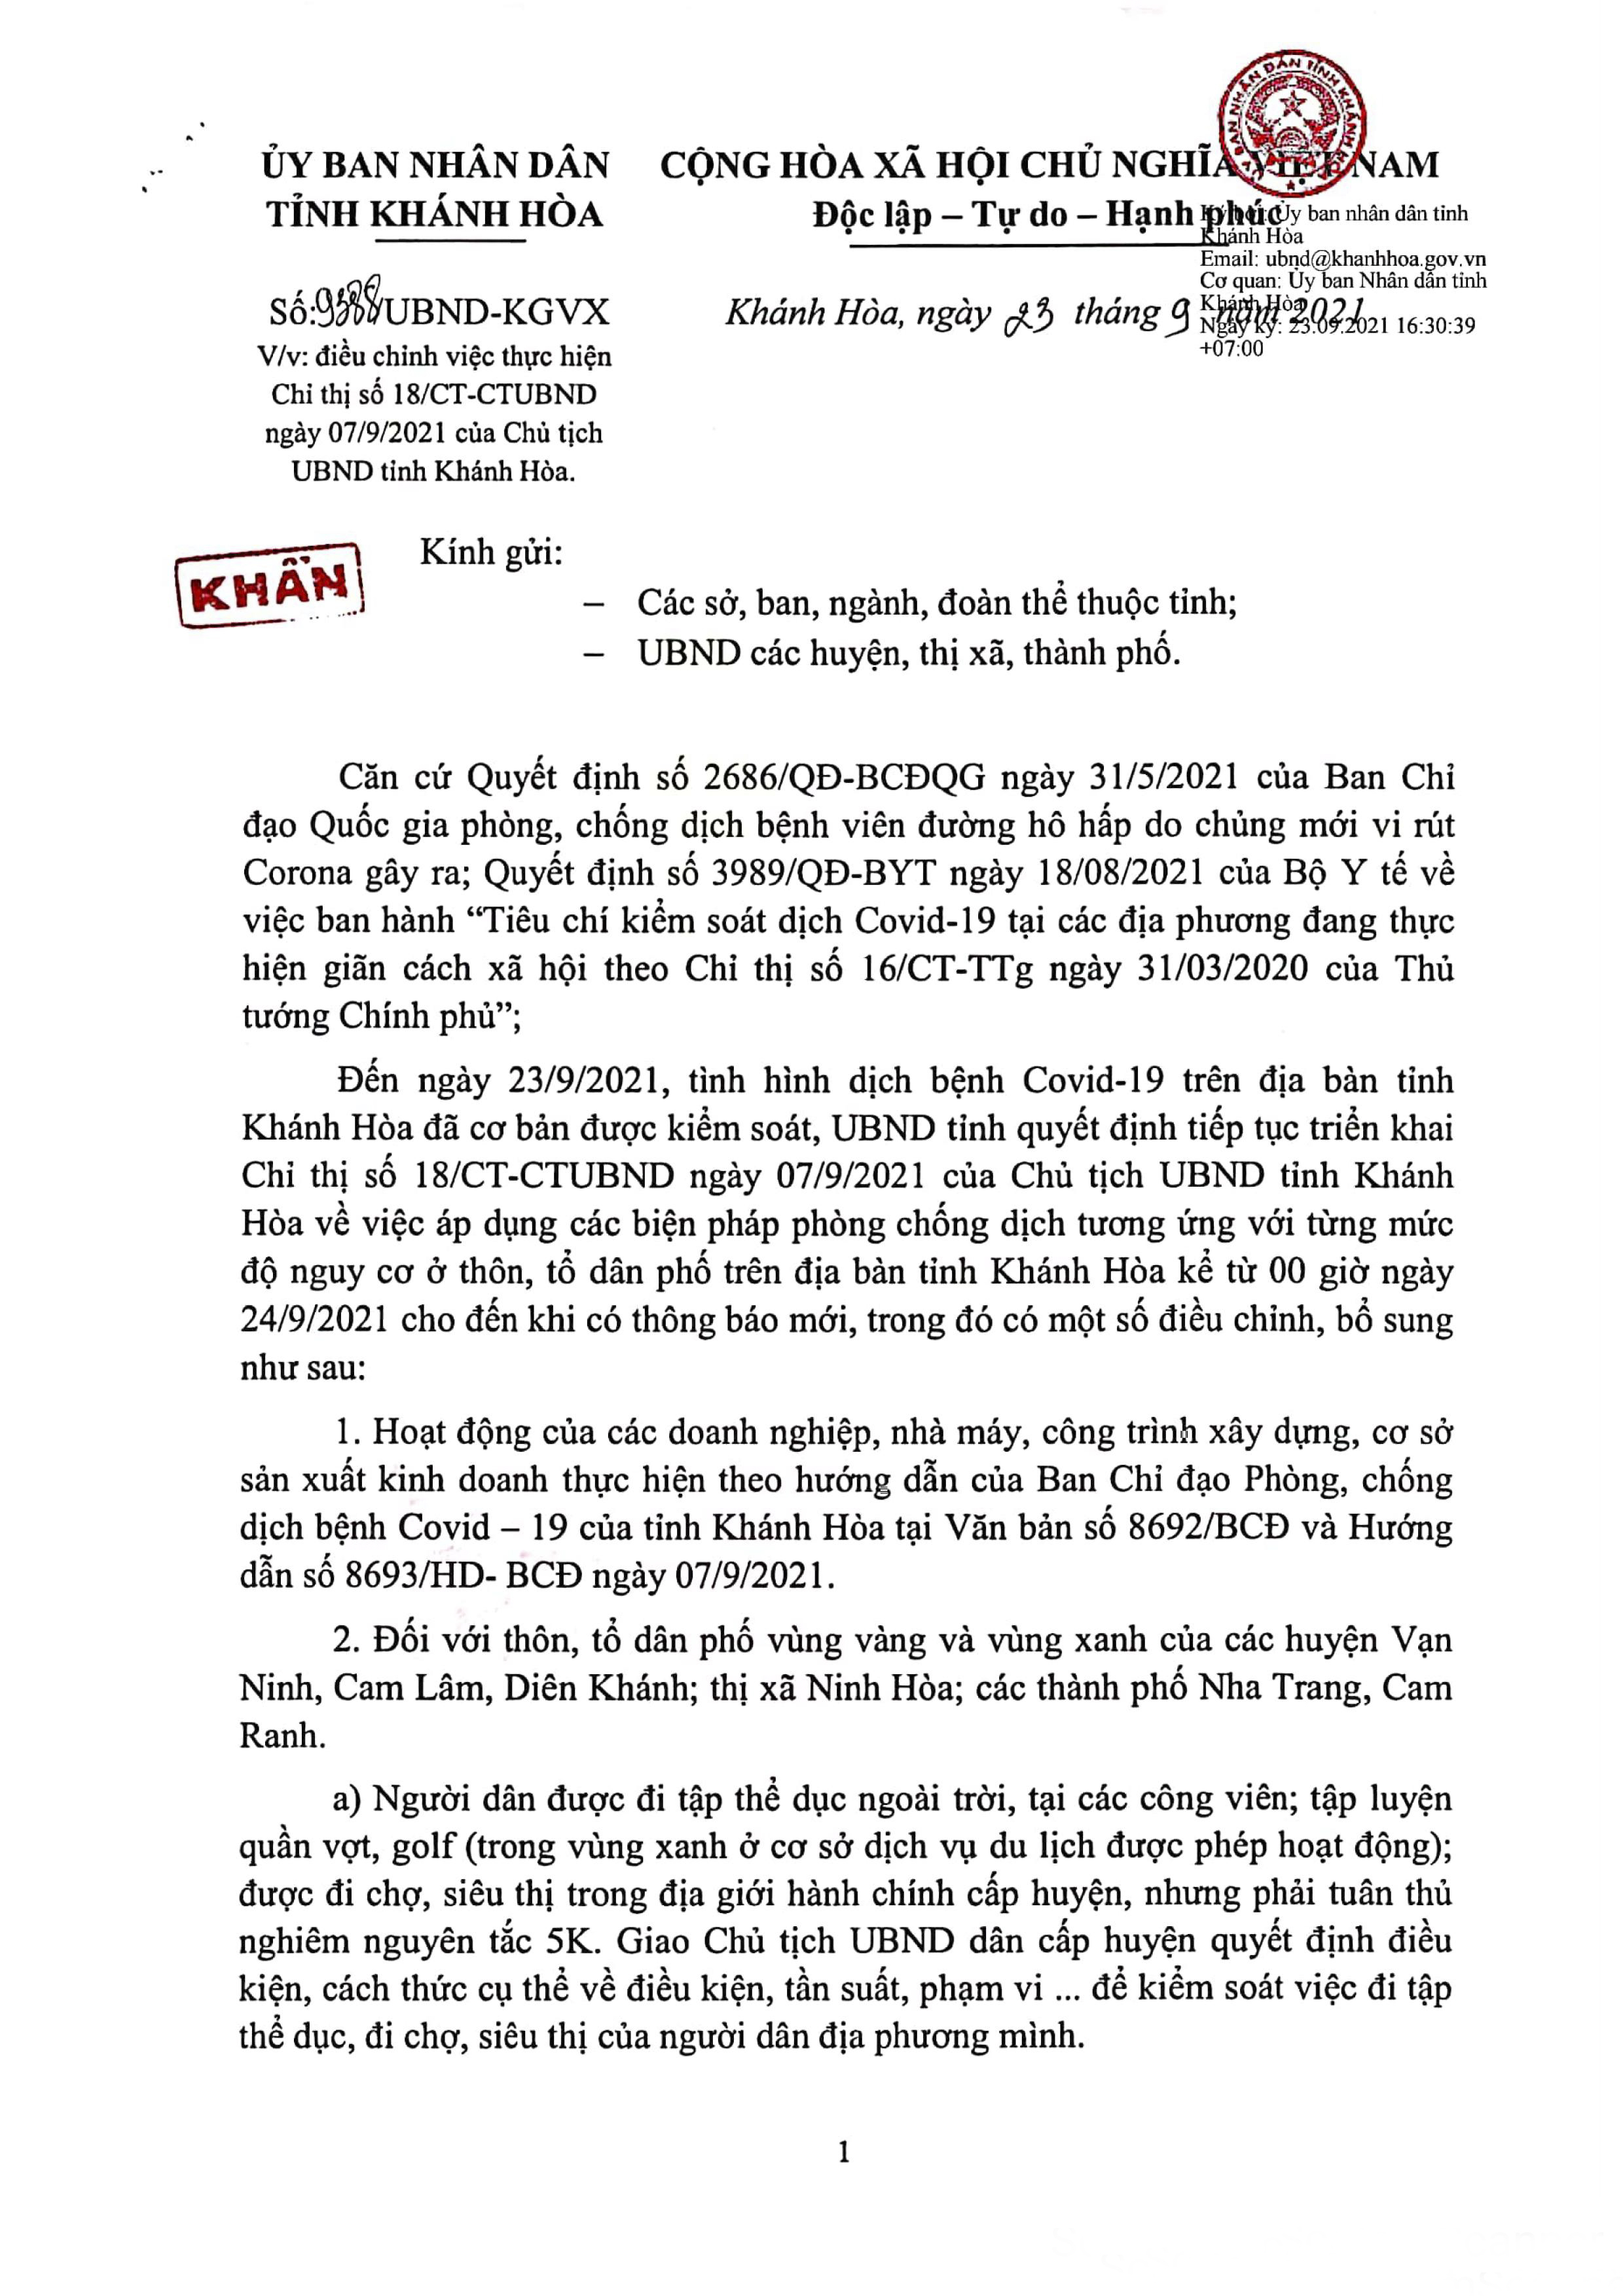 UBND tỉnh Khánh Hòa điều chỉnh thực hiện các biện pháp phòng, chống dịch Covid-19 từ ngày 24/9/2021